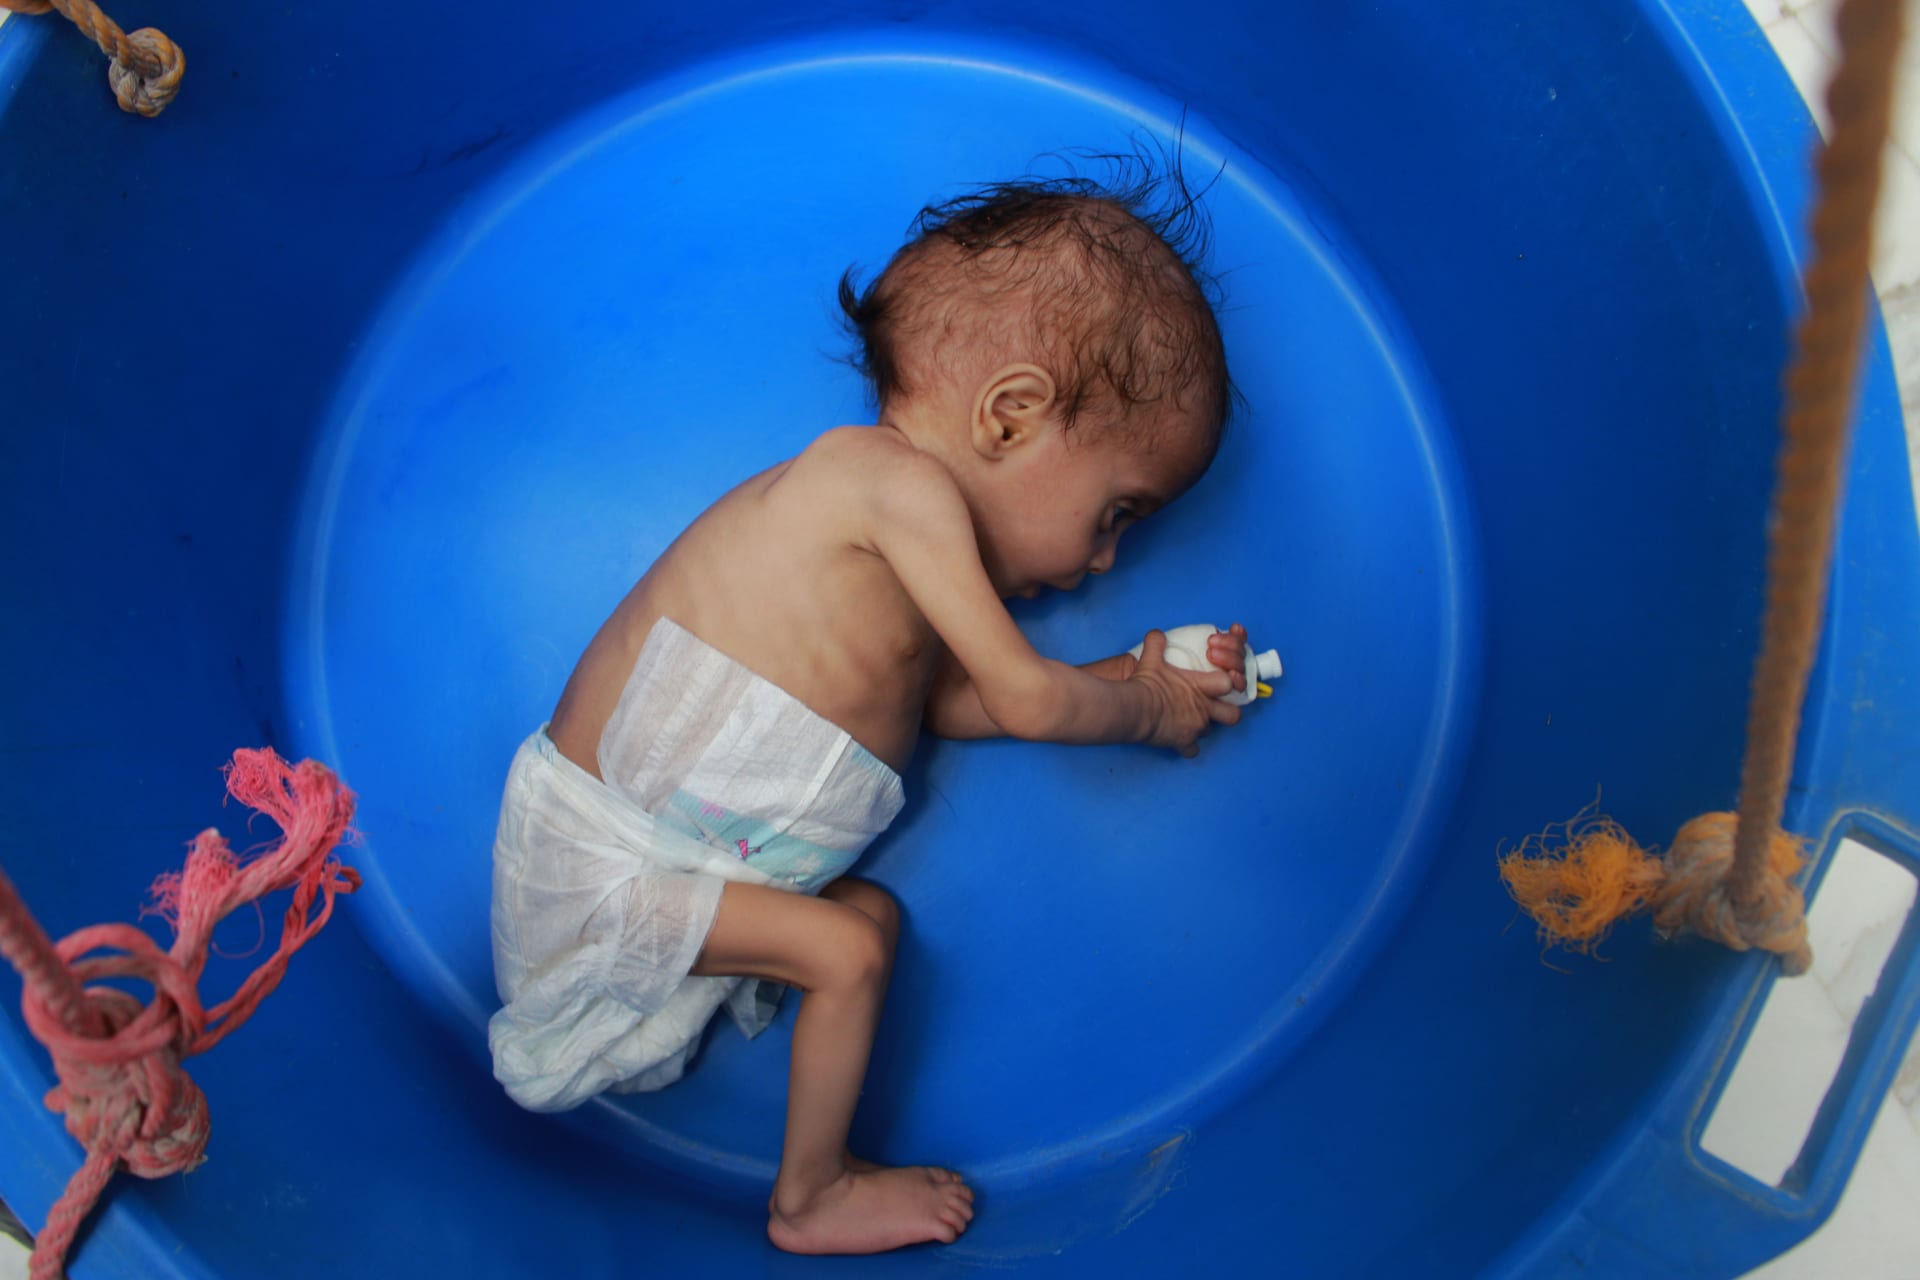 يونسيف: قرابة 7 ملايين طفل سيعانون من سوء التغذية الحاد بسبب جائحة كورونا